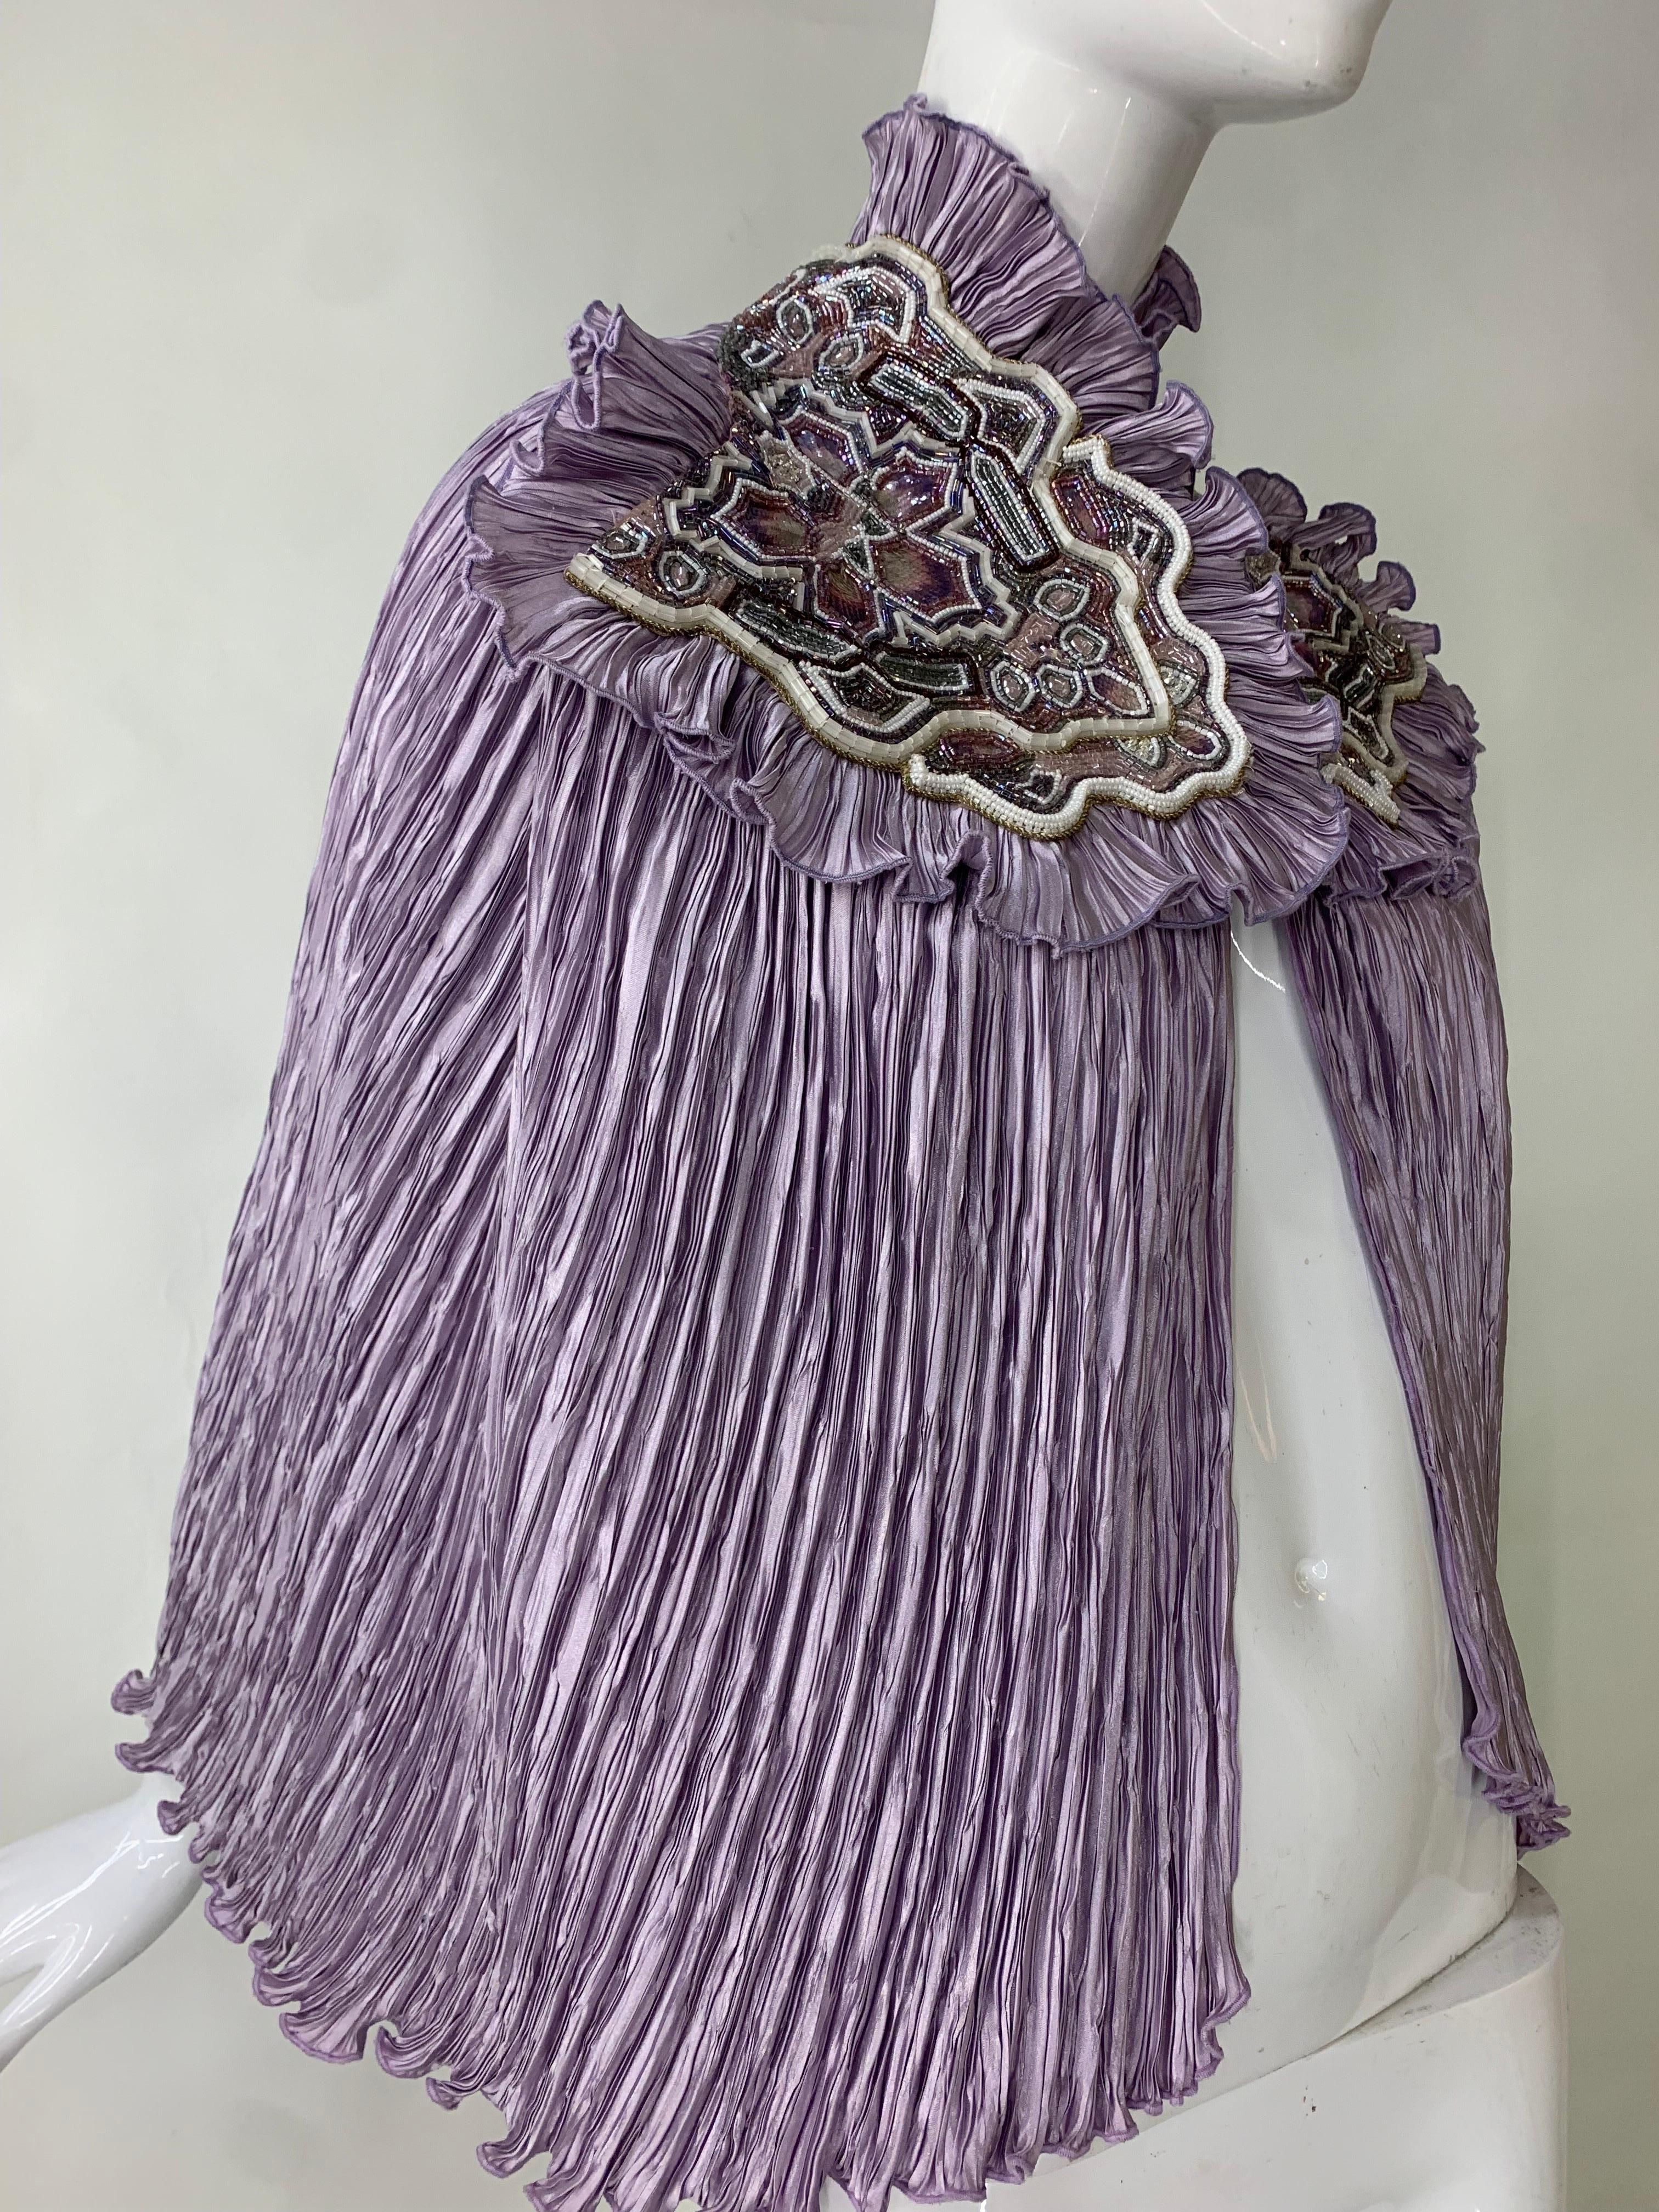 Torso Creations Lavendel plissierte Seide Caplet w stark Perlen & bestickte Applikationen:  Dieses einzigartige Stück wurde aus einem alten Mary McFadden-Kleid von Torso Creations gefertigt und ist ein einzigartiger Blickfang! Die Schulterpartie ist